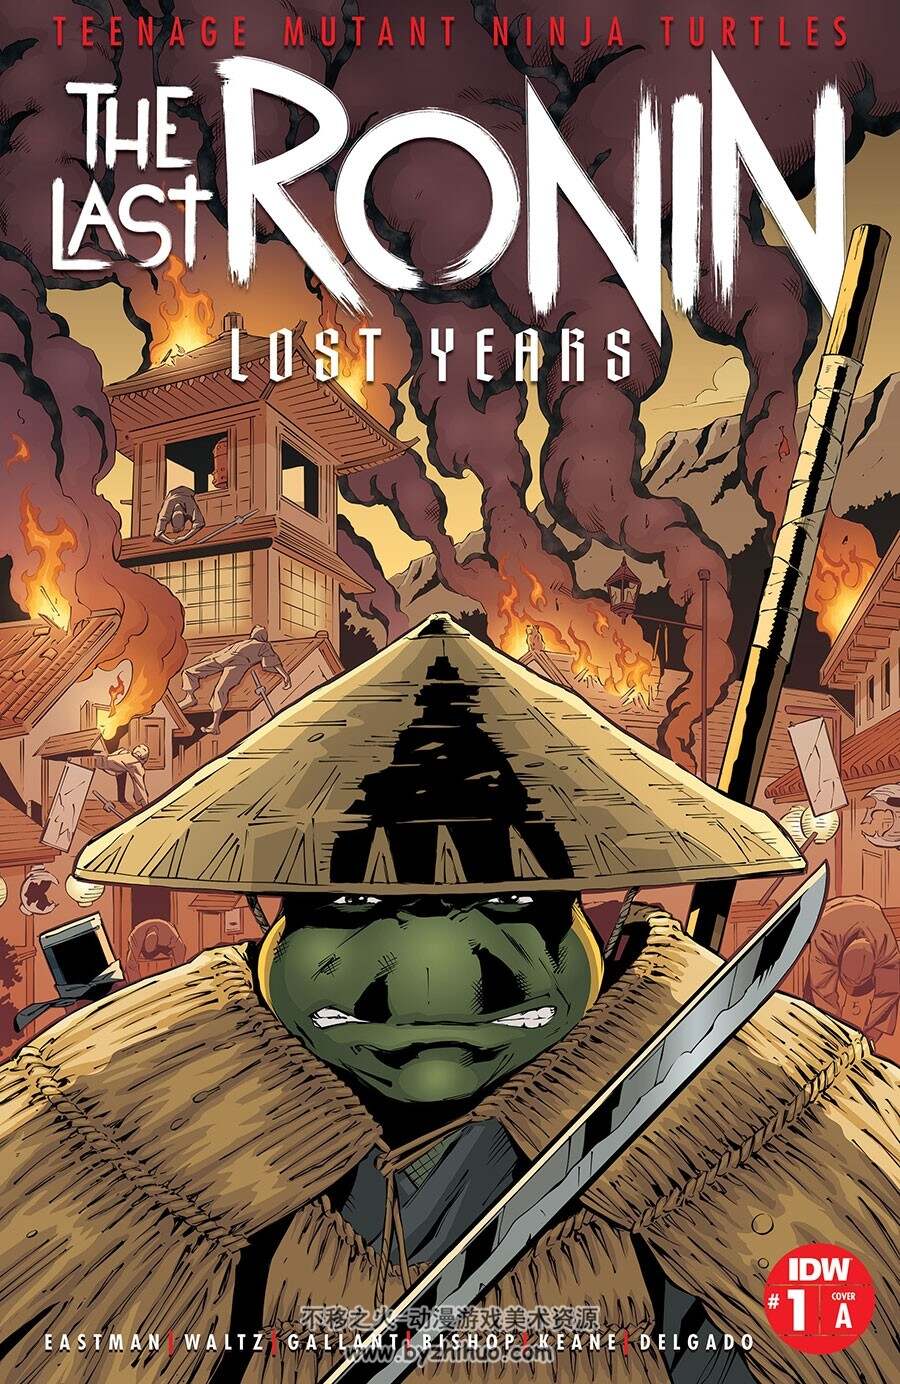 Teenage Mutant Ninja Turtles The Last Ronin Lost Years 第1册 漫画下载